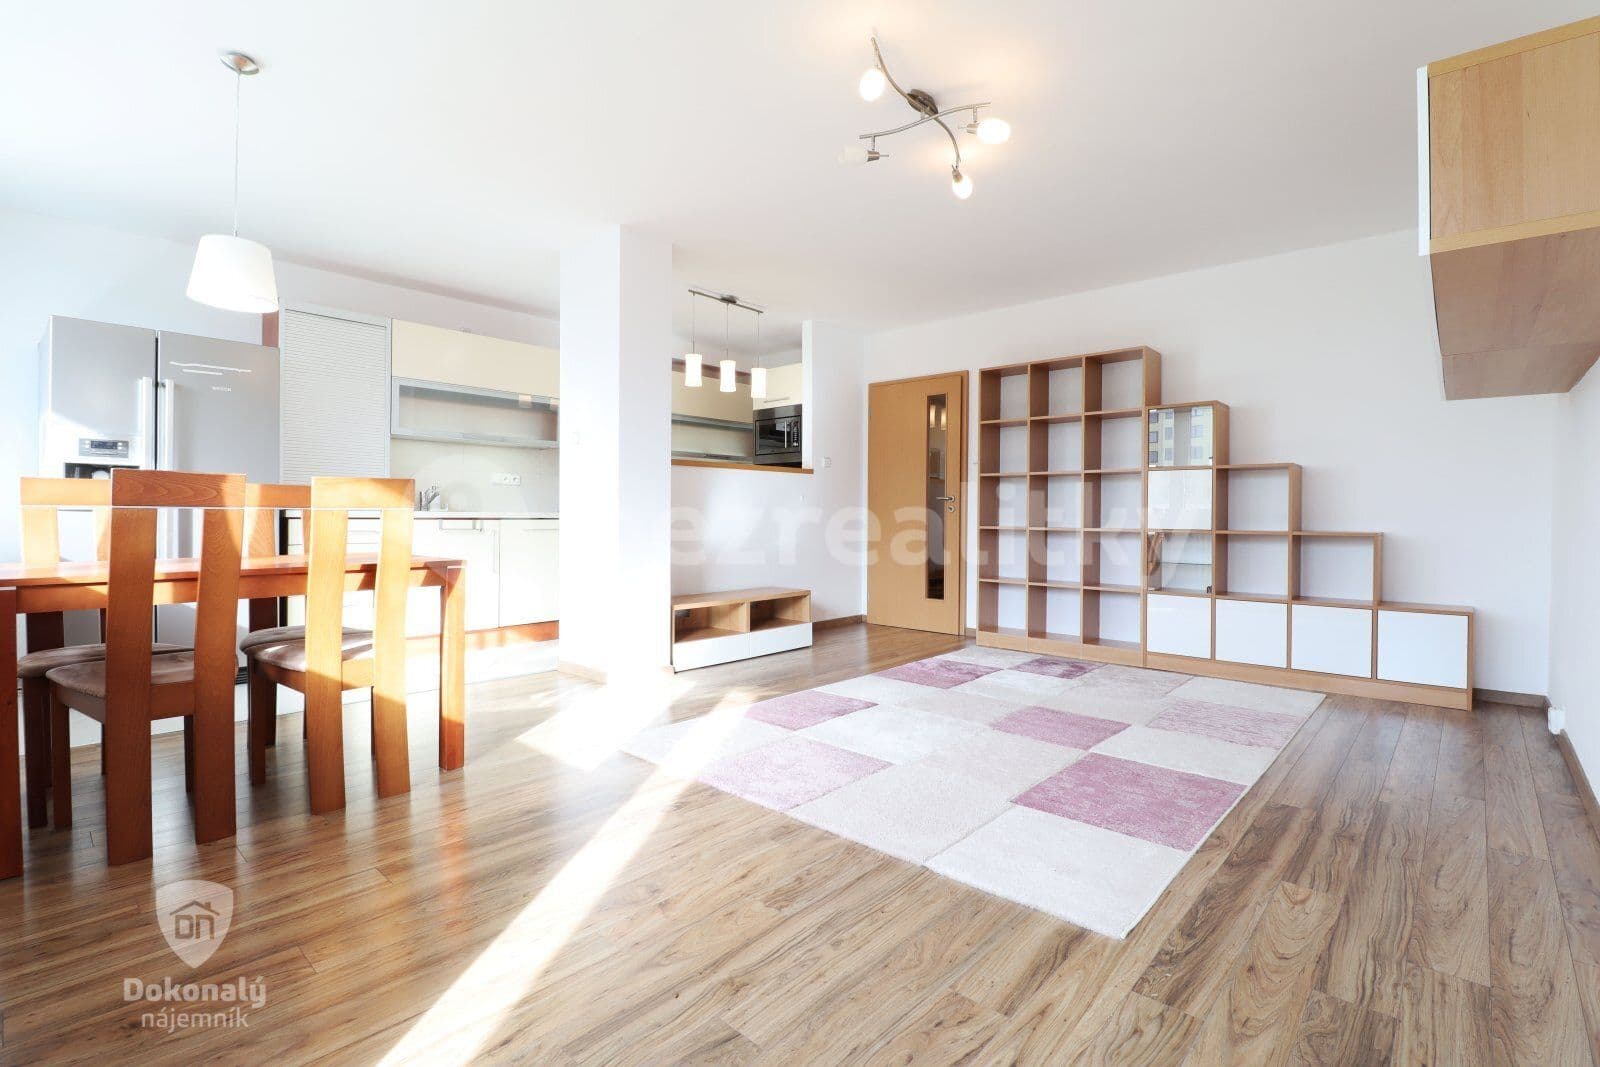 3 bedroom flat to rent, 74 m², Vratislavská, Prague, Prague